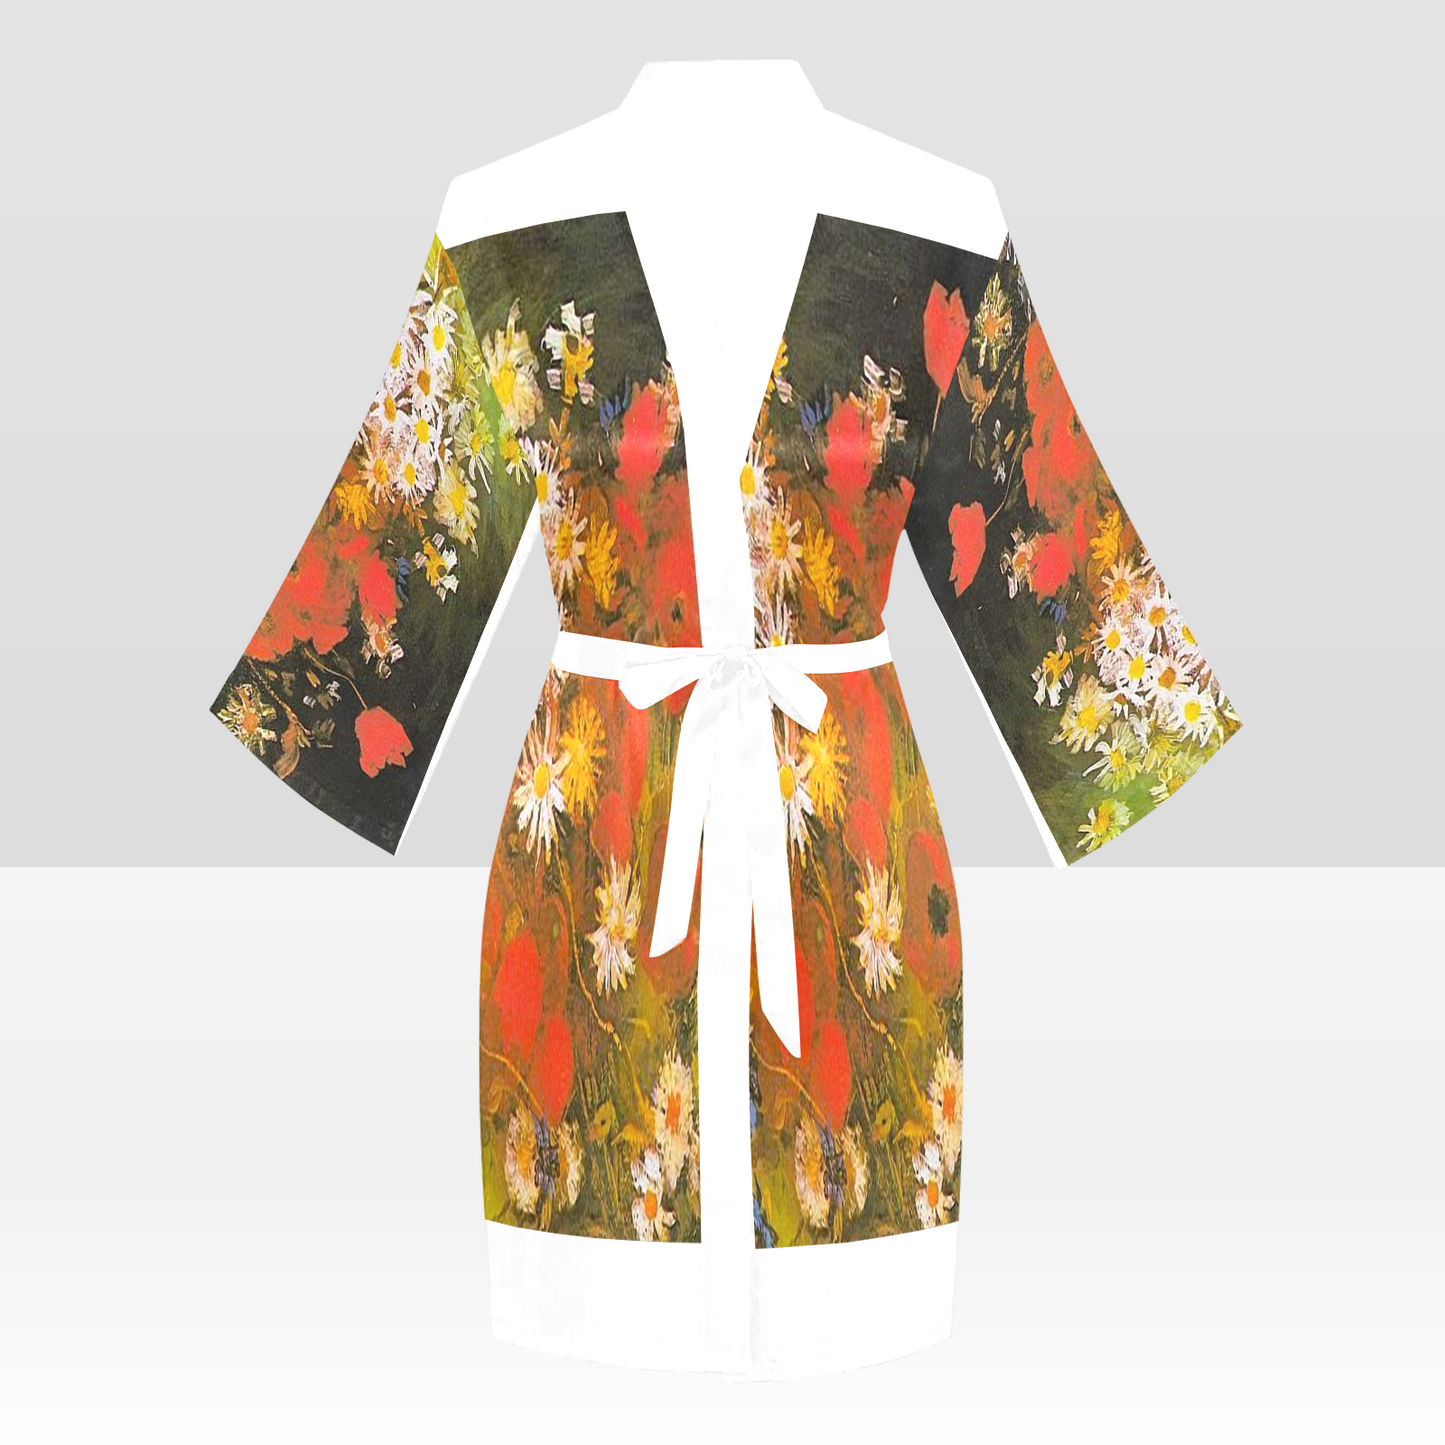 Vintage Floral Kimono Robe, Black or White Trim, Sizes XS to 2XL, Design 60